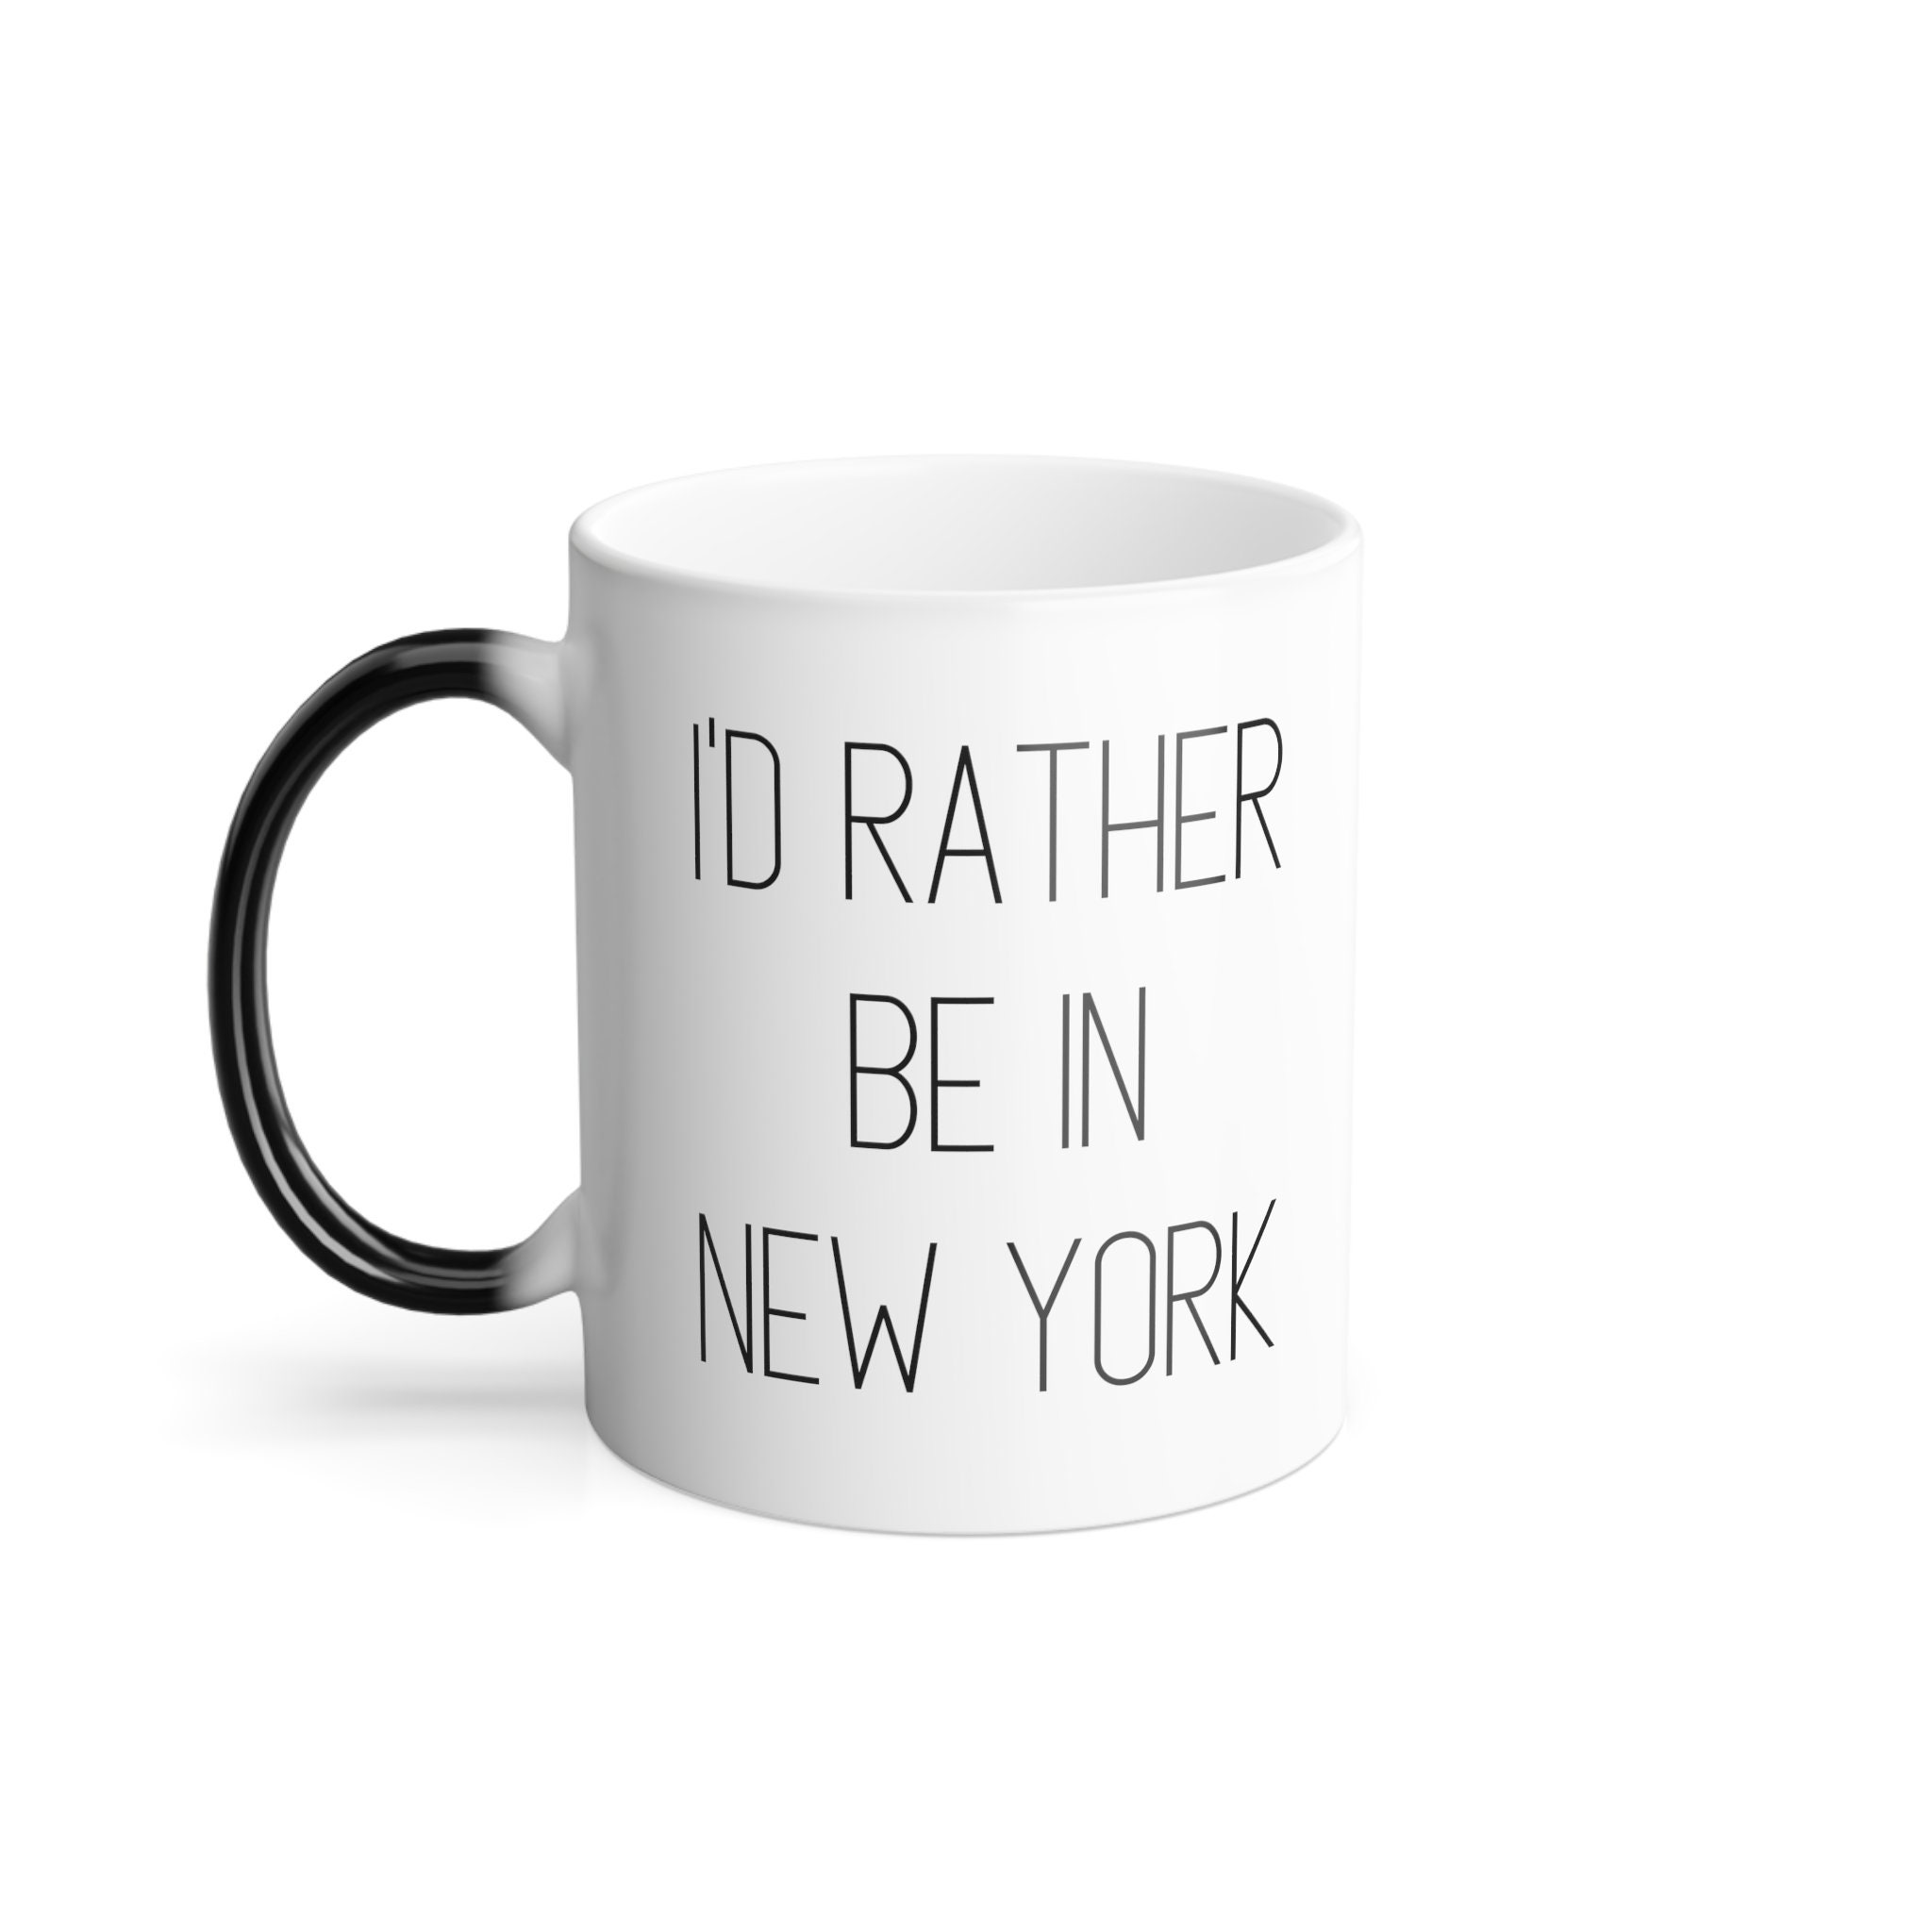 Discover New York Mug New York City Mug New York Lover Gift I'd rather be in New York Mugs